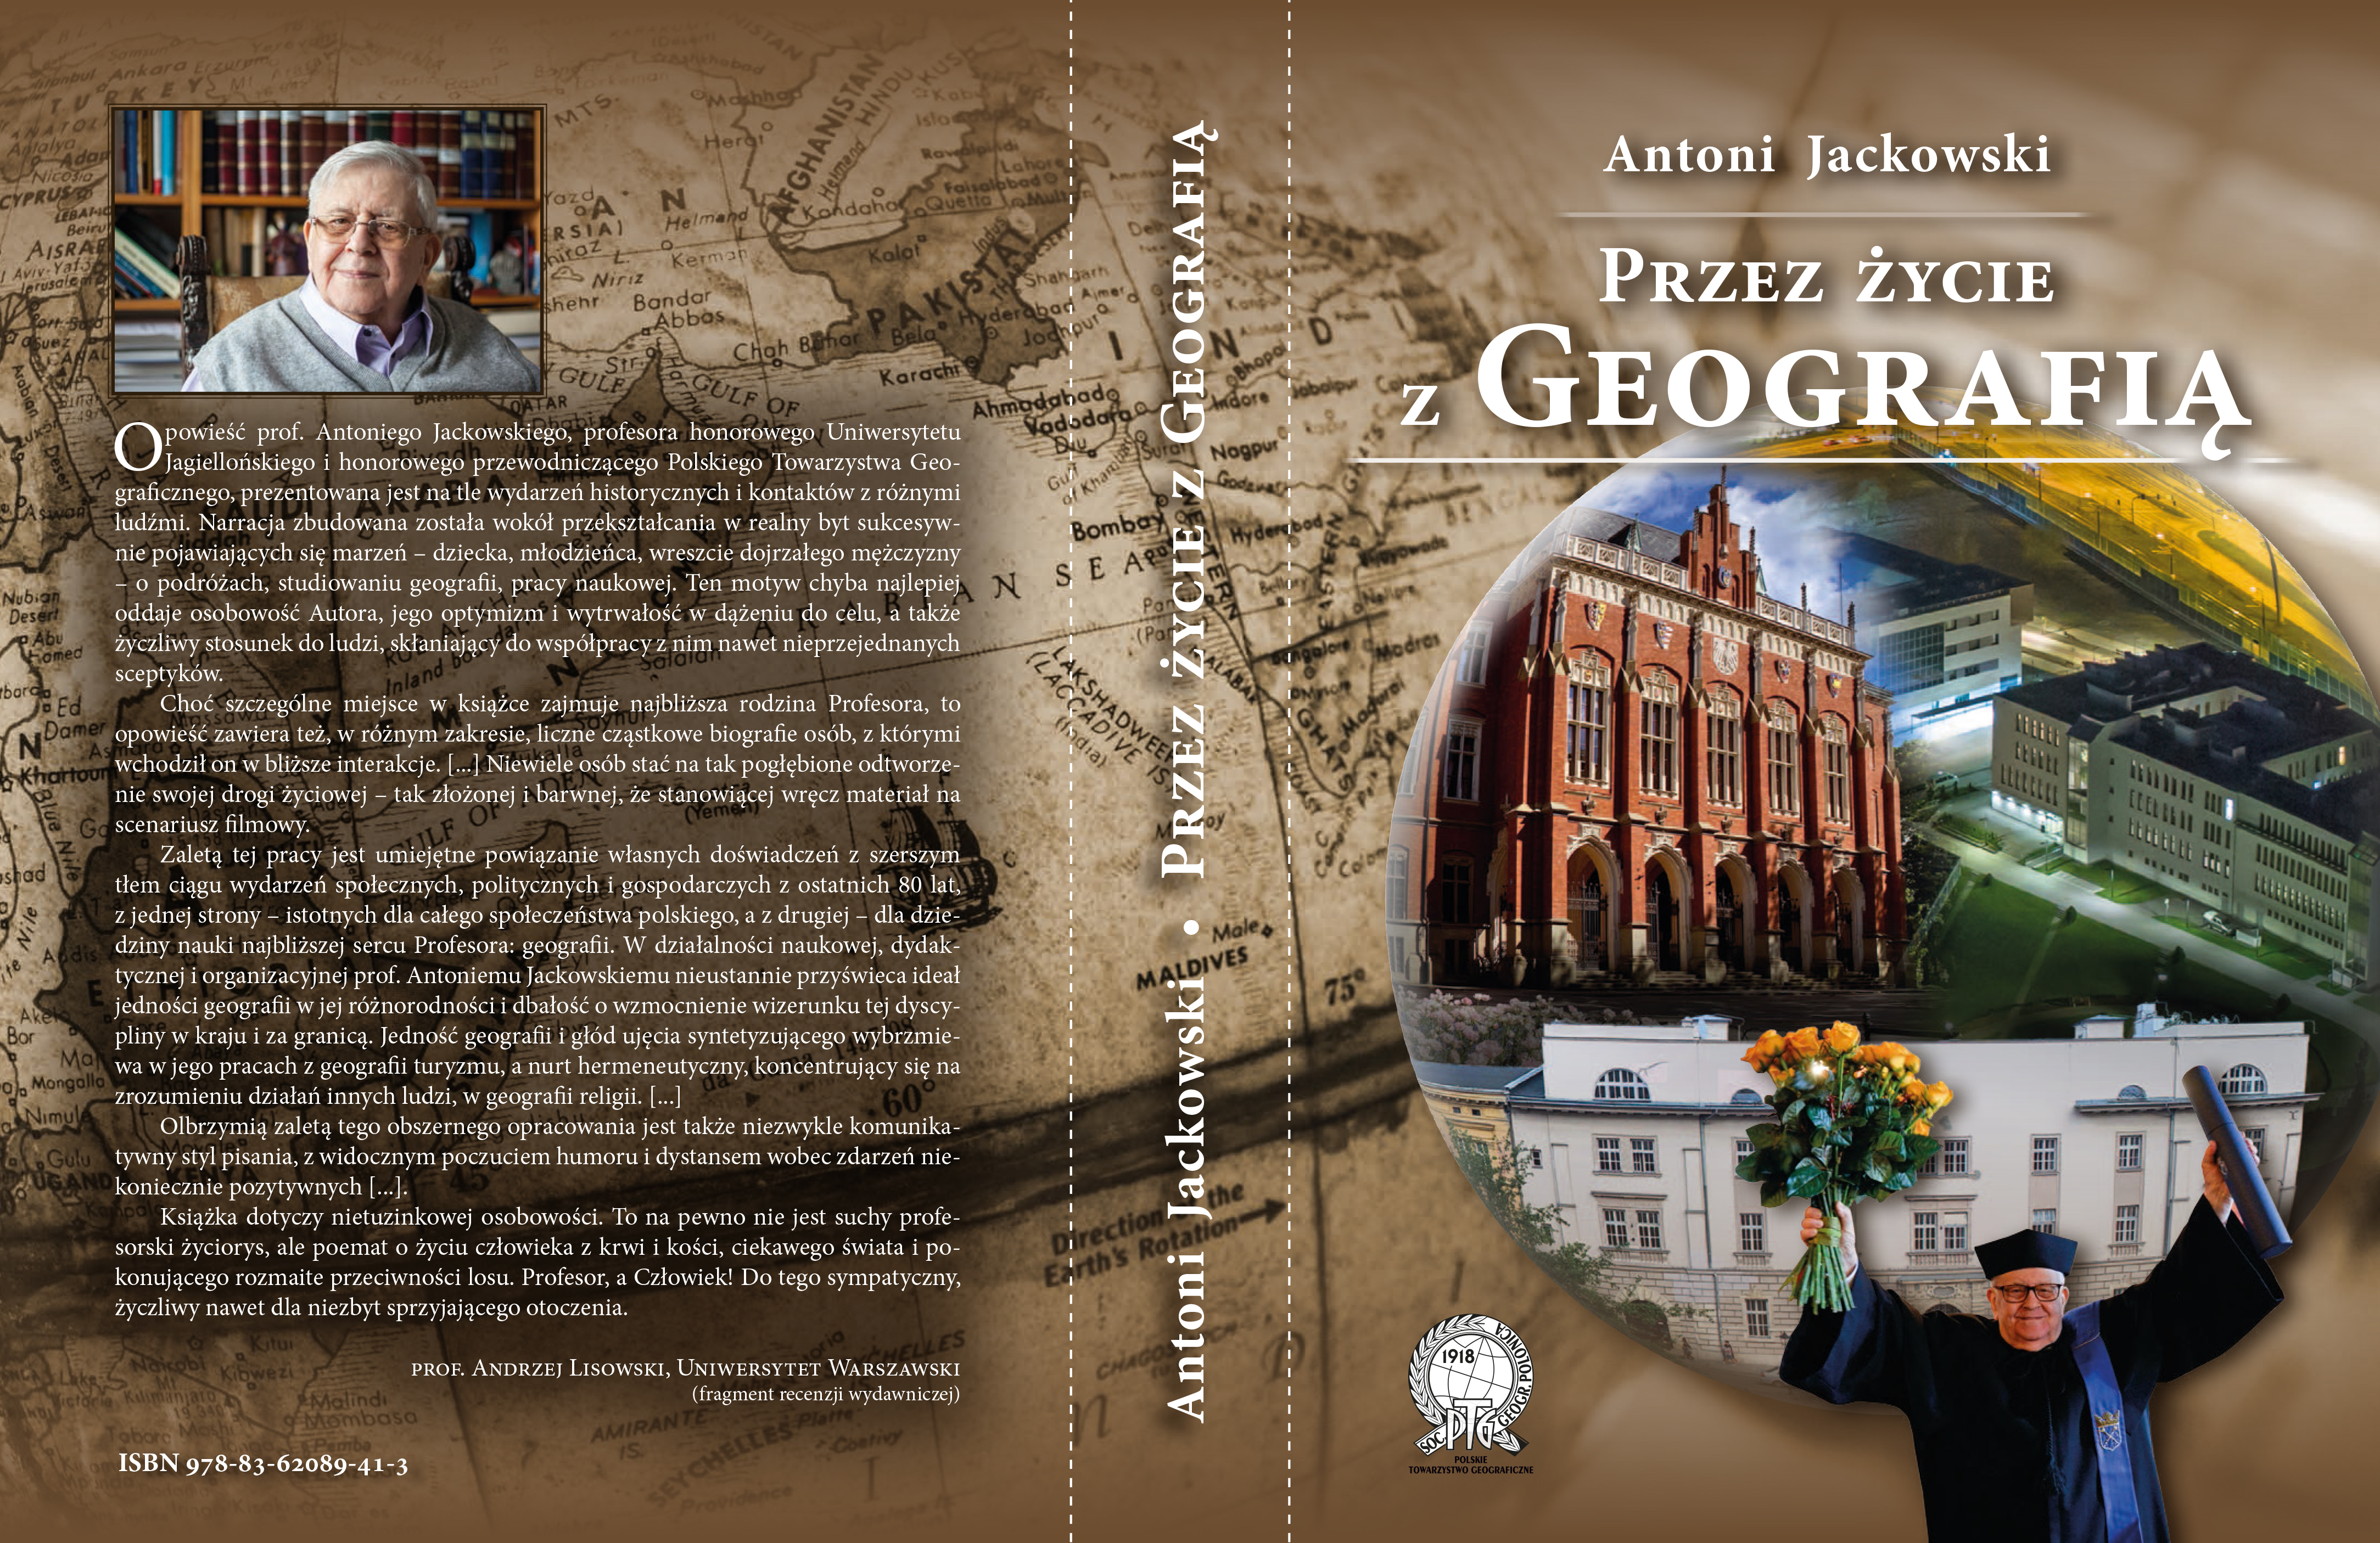 Okładka książki "Przez życie z geografią"